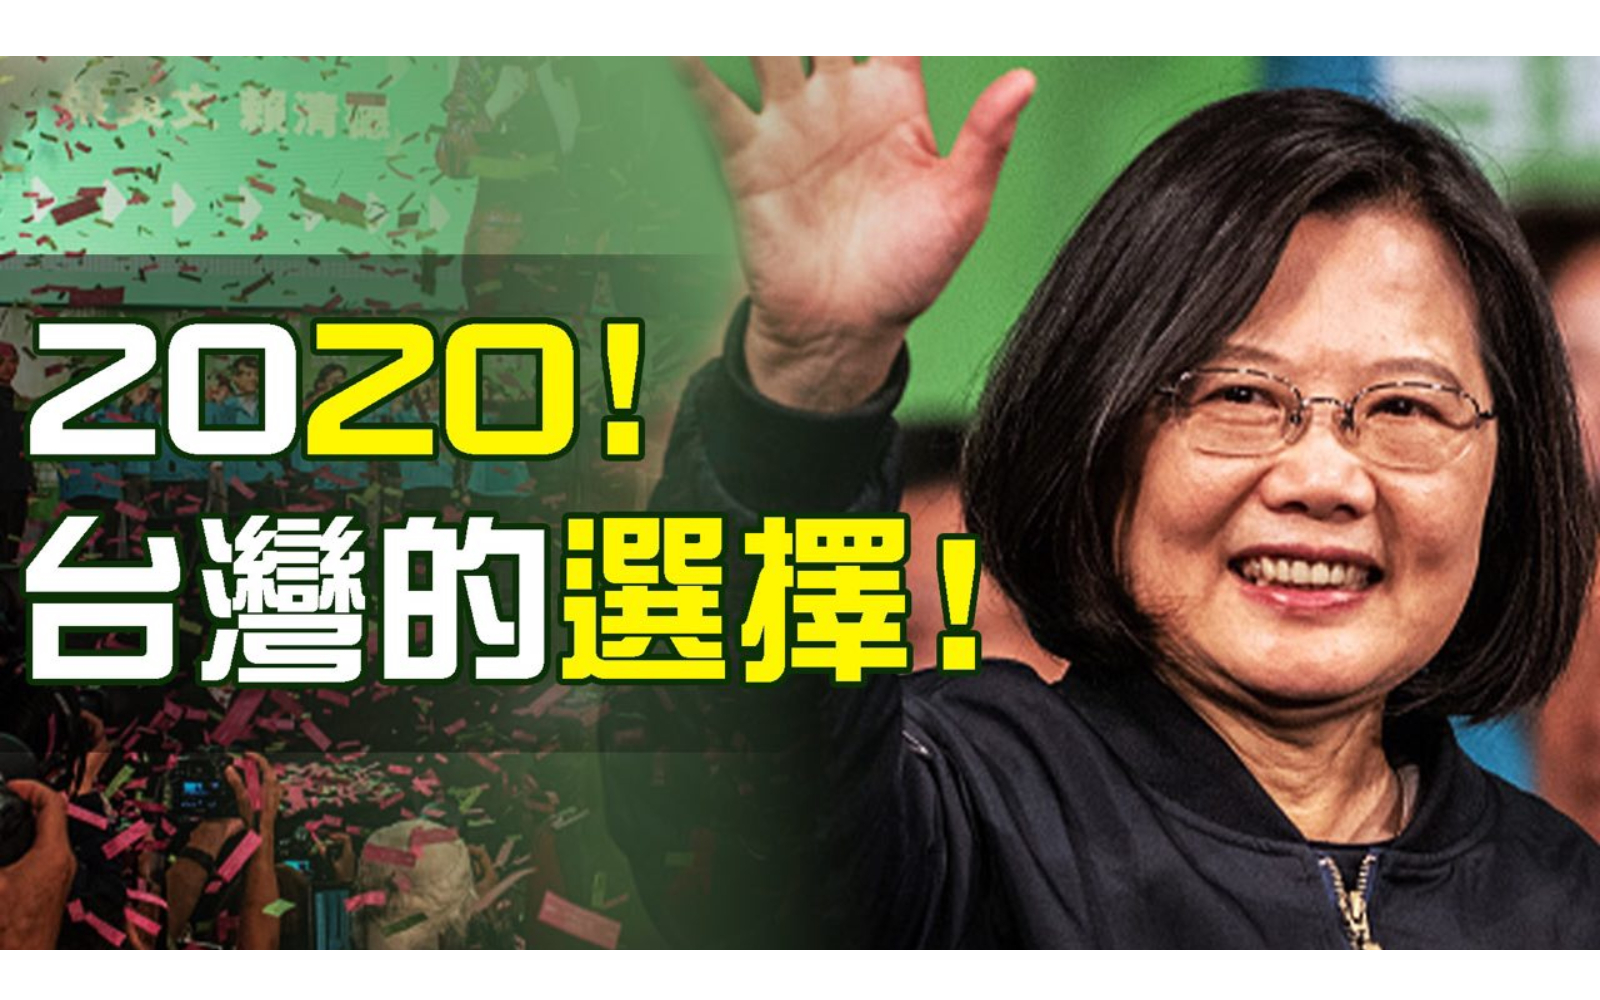 本期熱點互動特別節目邀請專家熱議本次台灣大選結果及美中台關係走向。（新唐人合成）